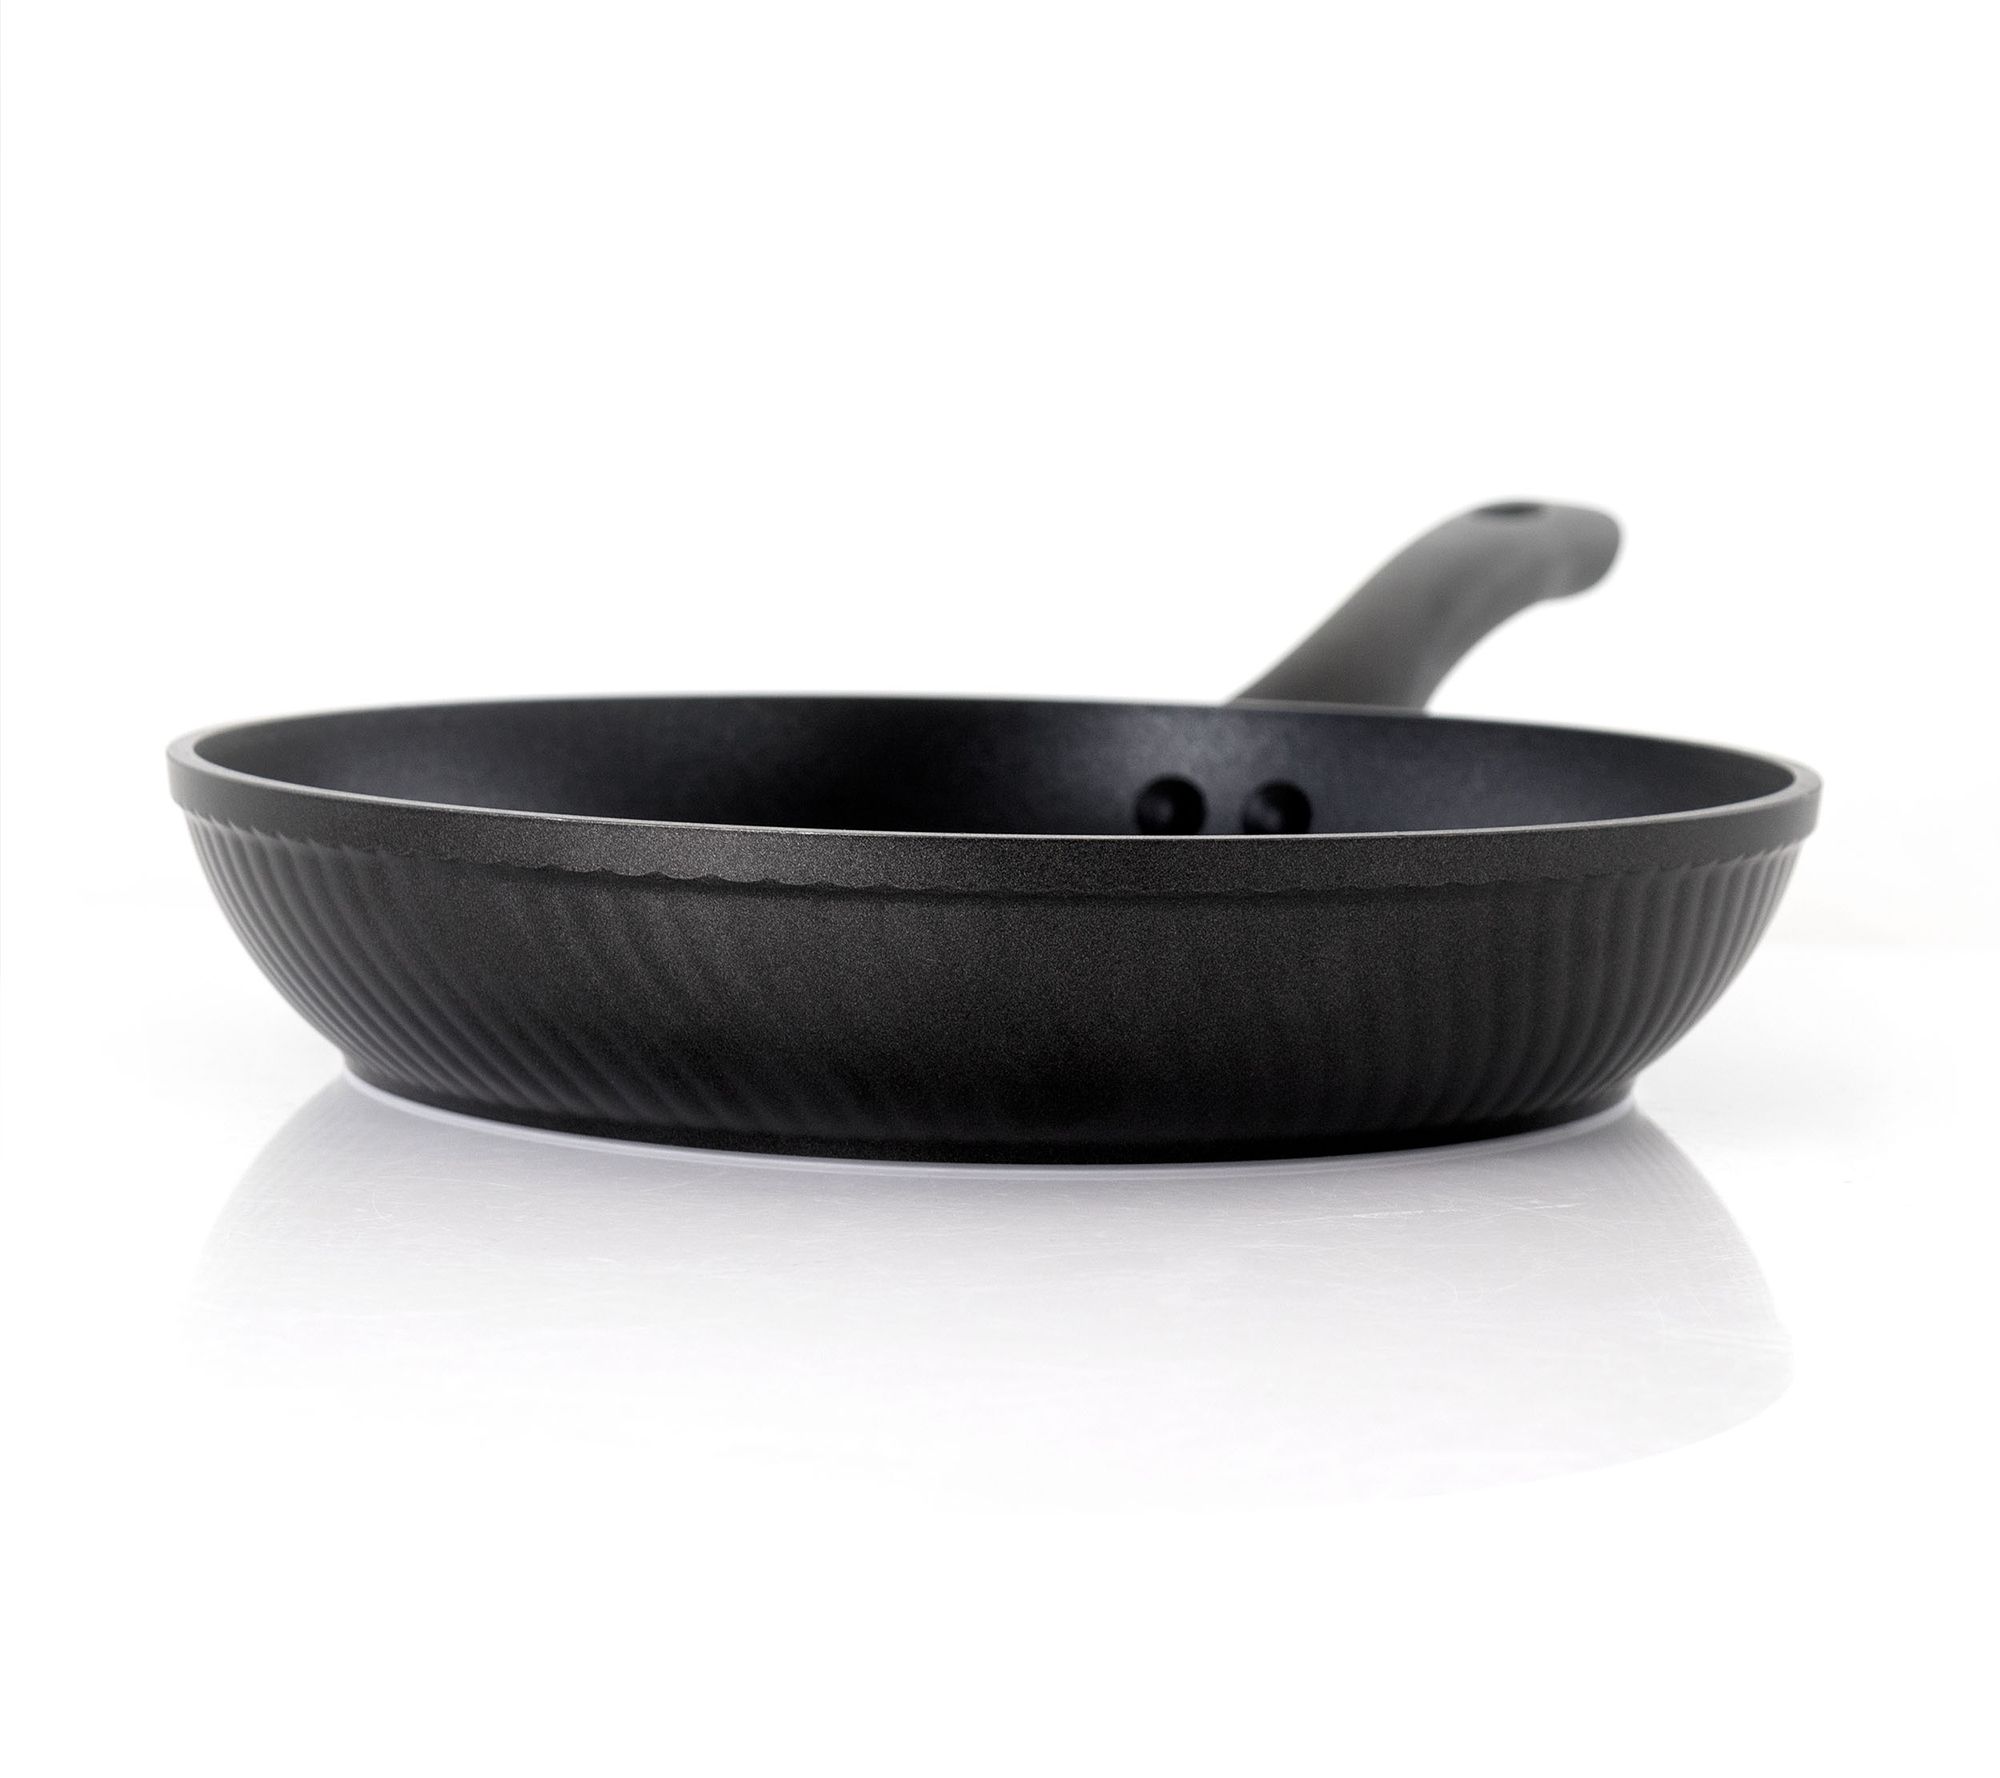 Oster Kono 11 in. Aluminum Nonstick Frying Pan in Black